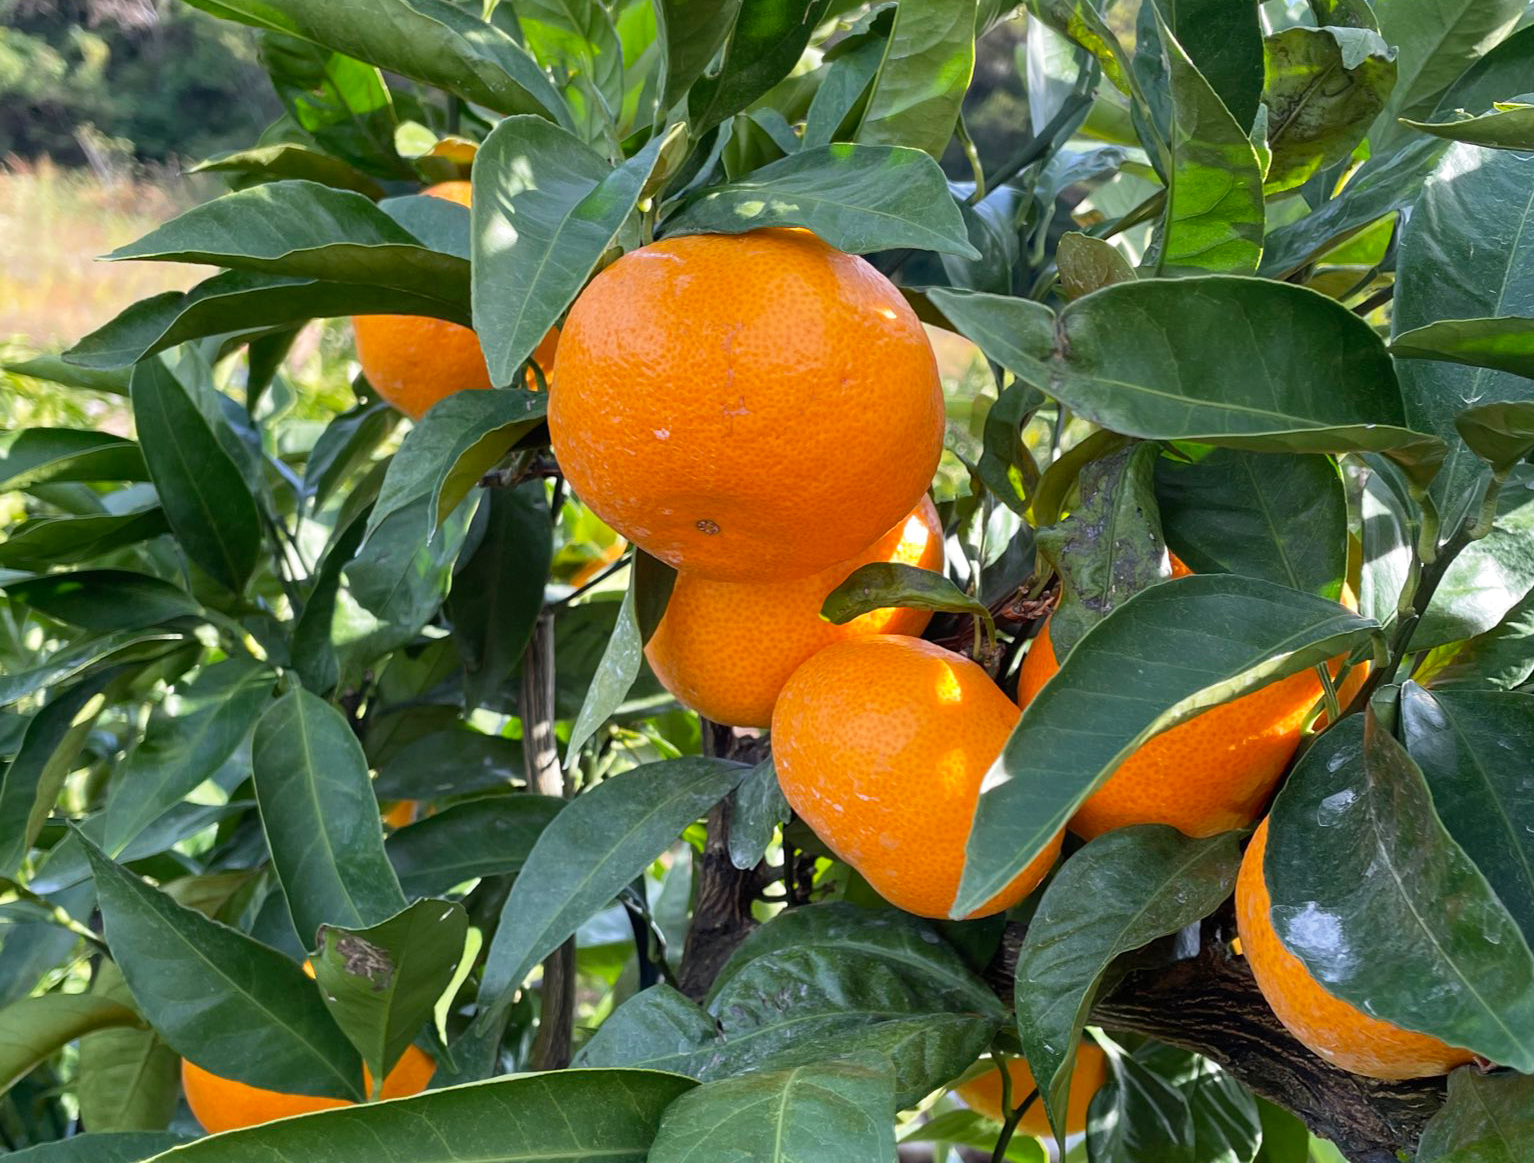 柑橘類の種類や育て方のポイントについて